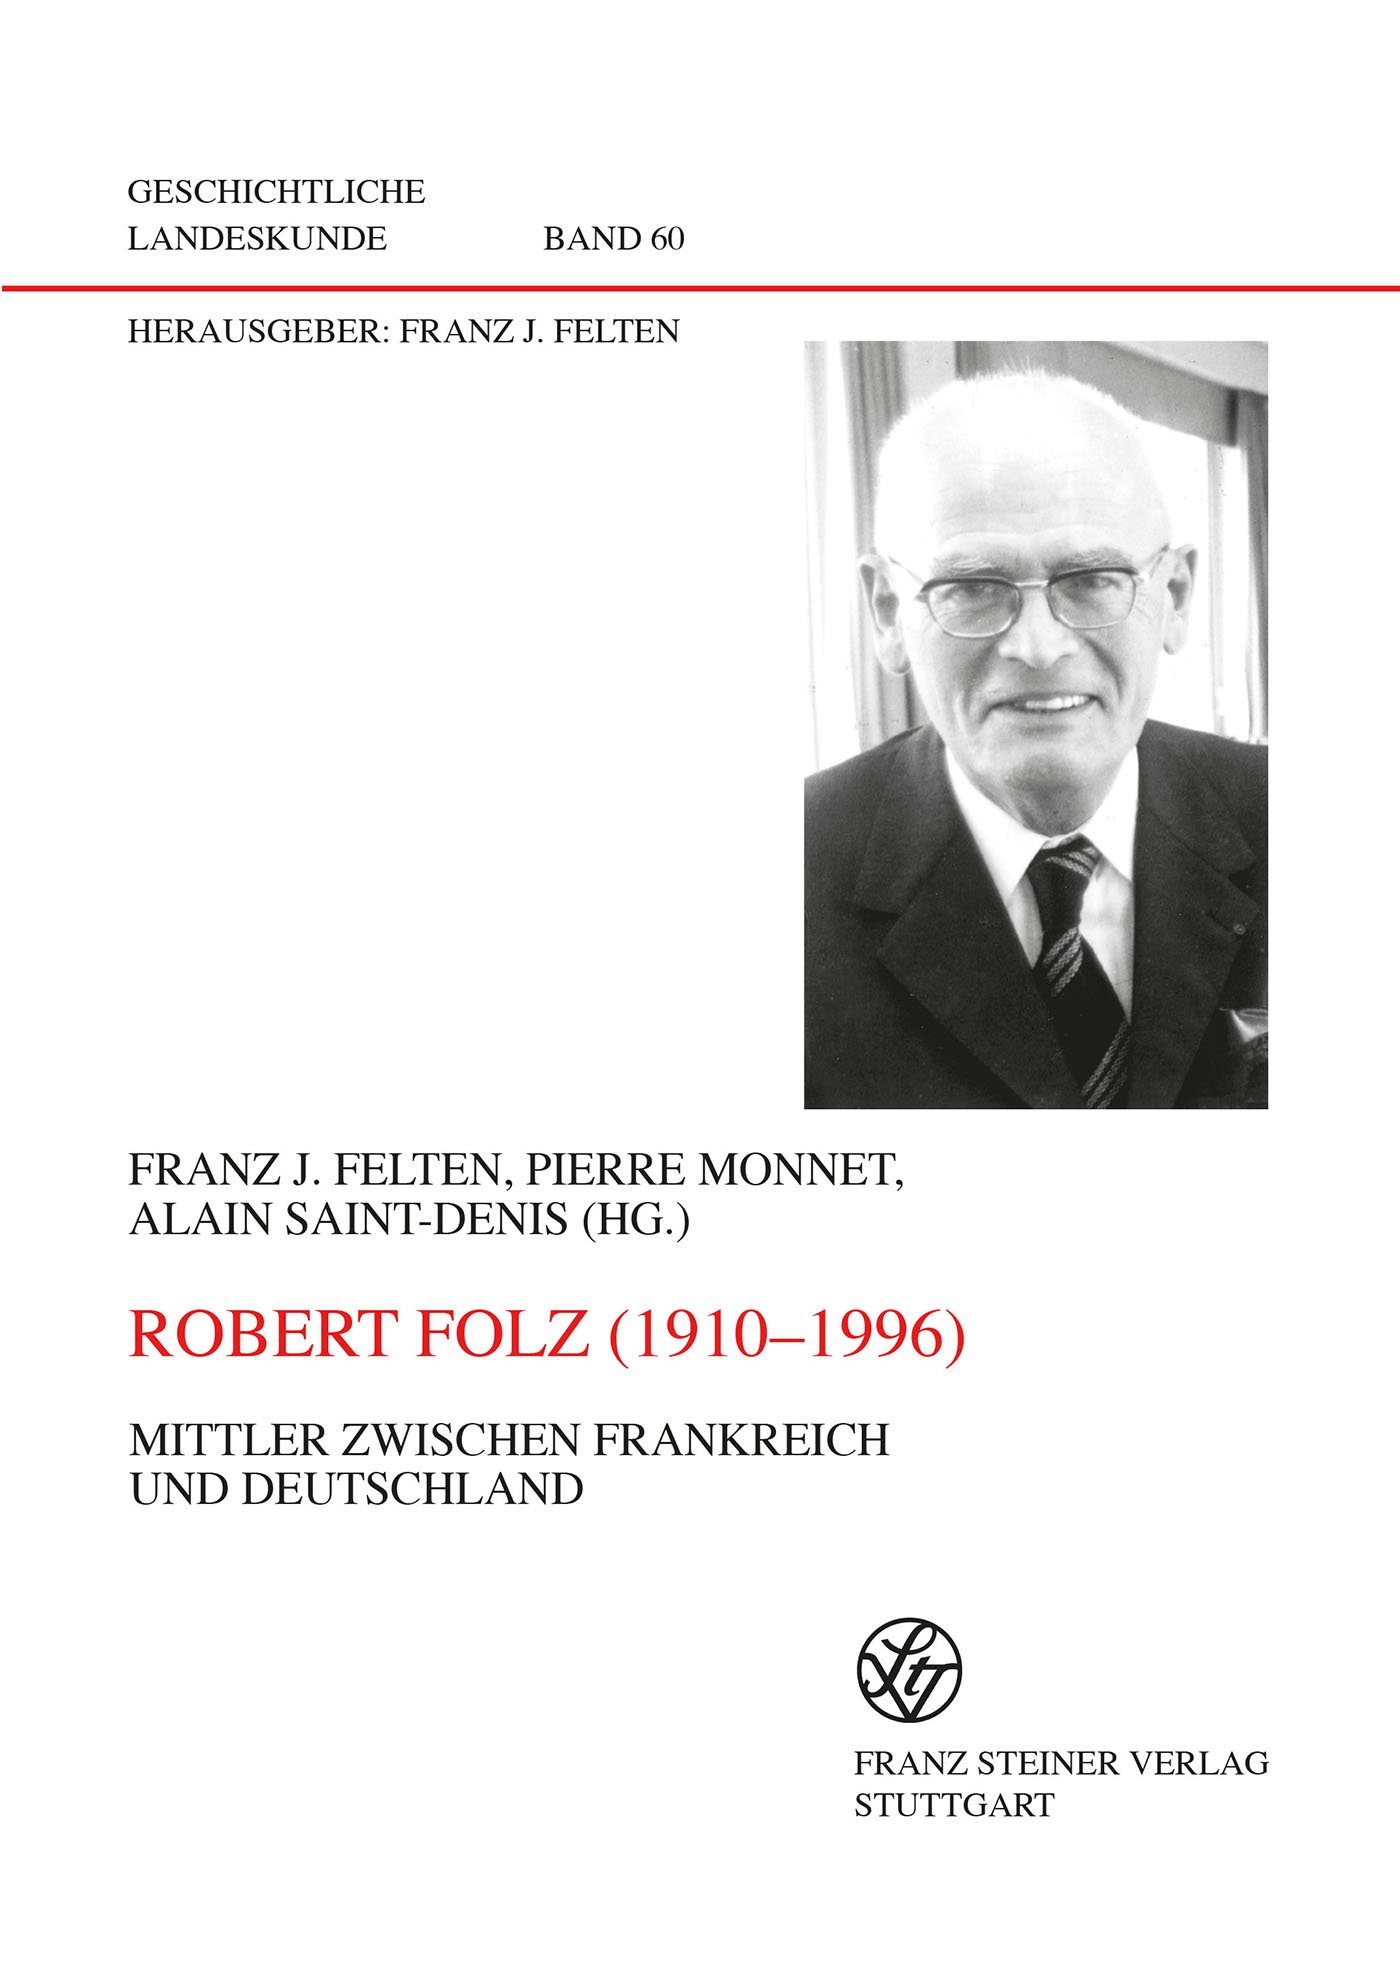 Robert Folz (1910-1996)